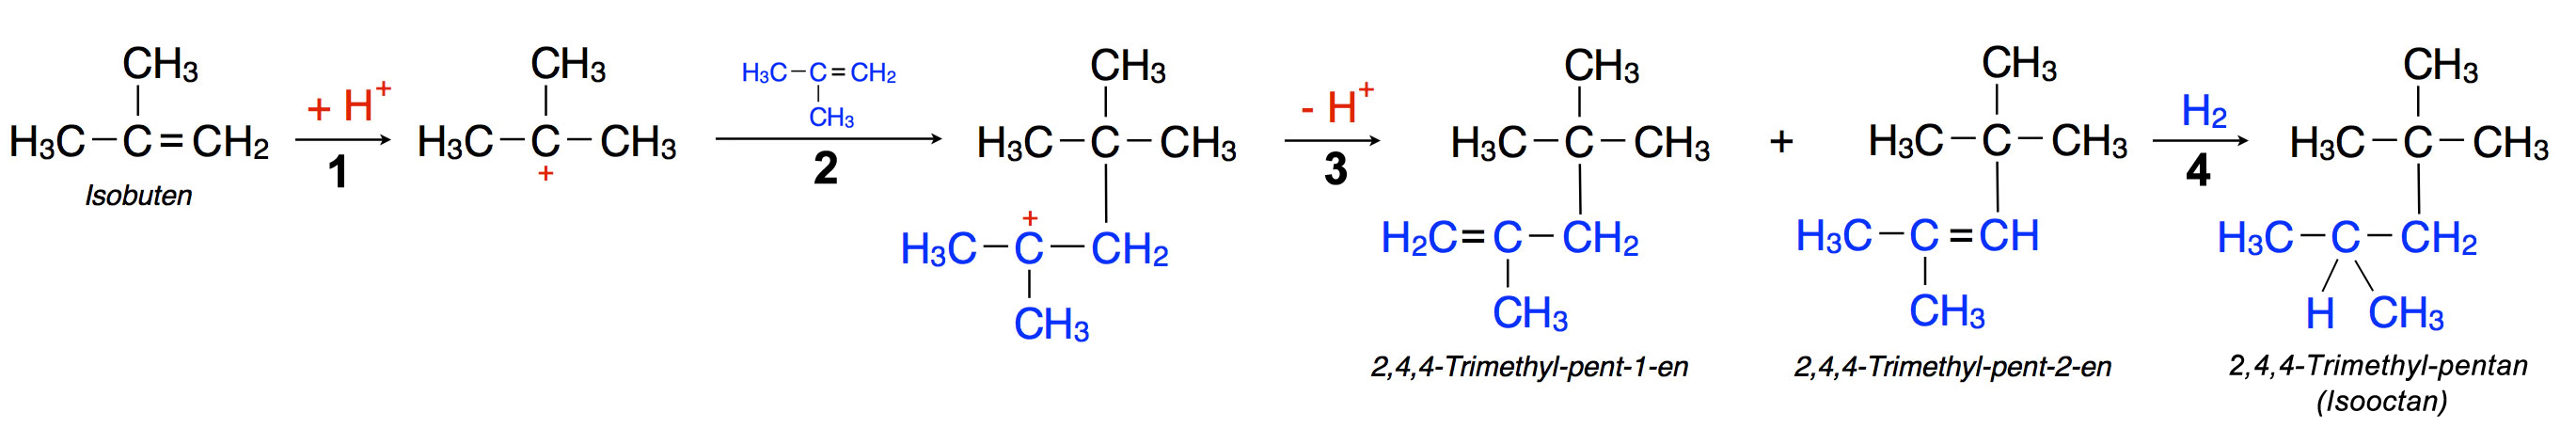 Die beiden ersten Schritte der Dimerisierung von Isobuten. Erläuterungen siehe Text.